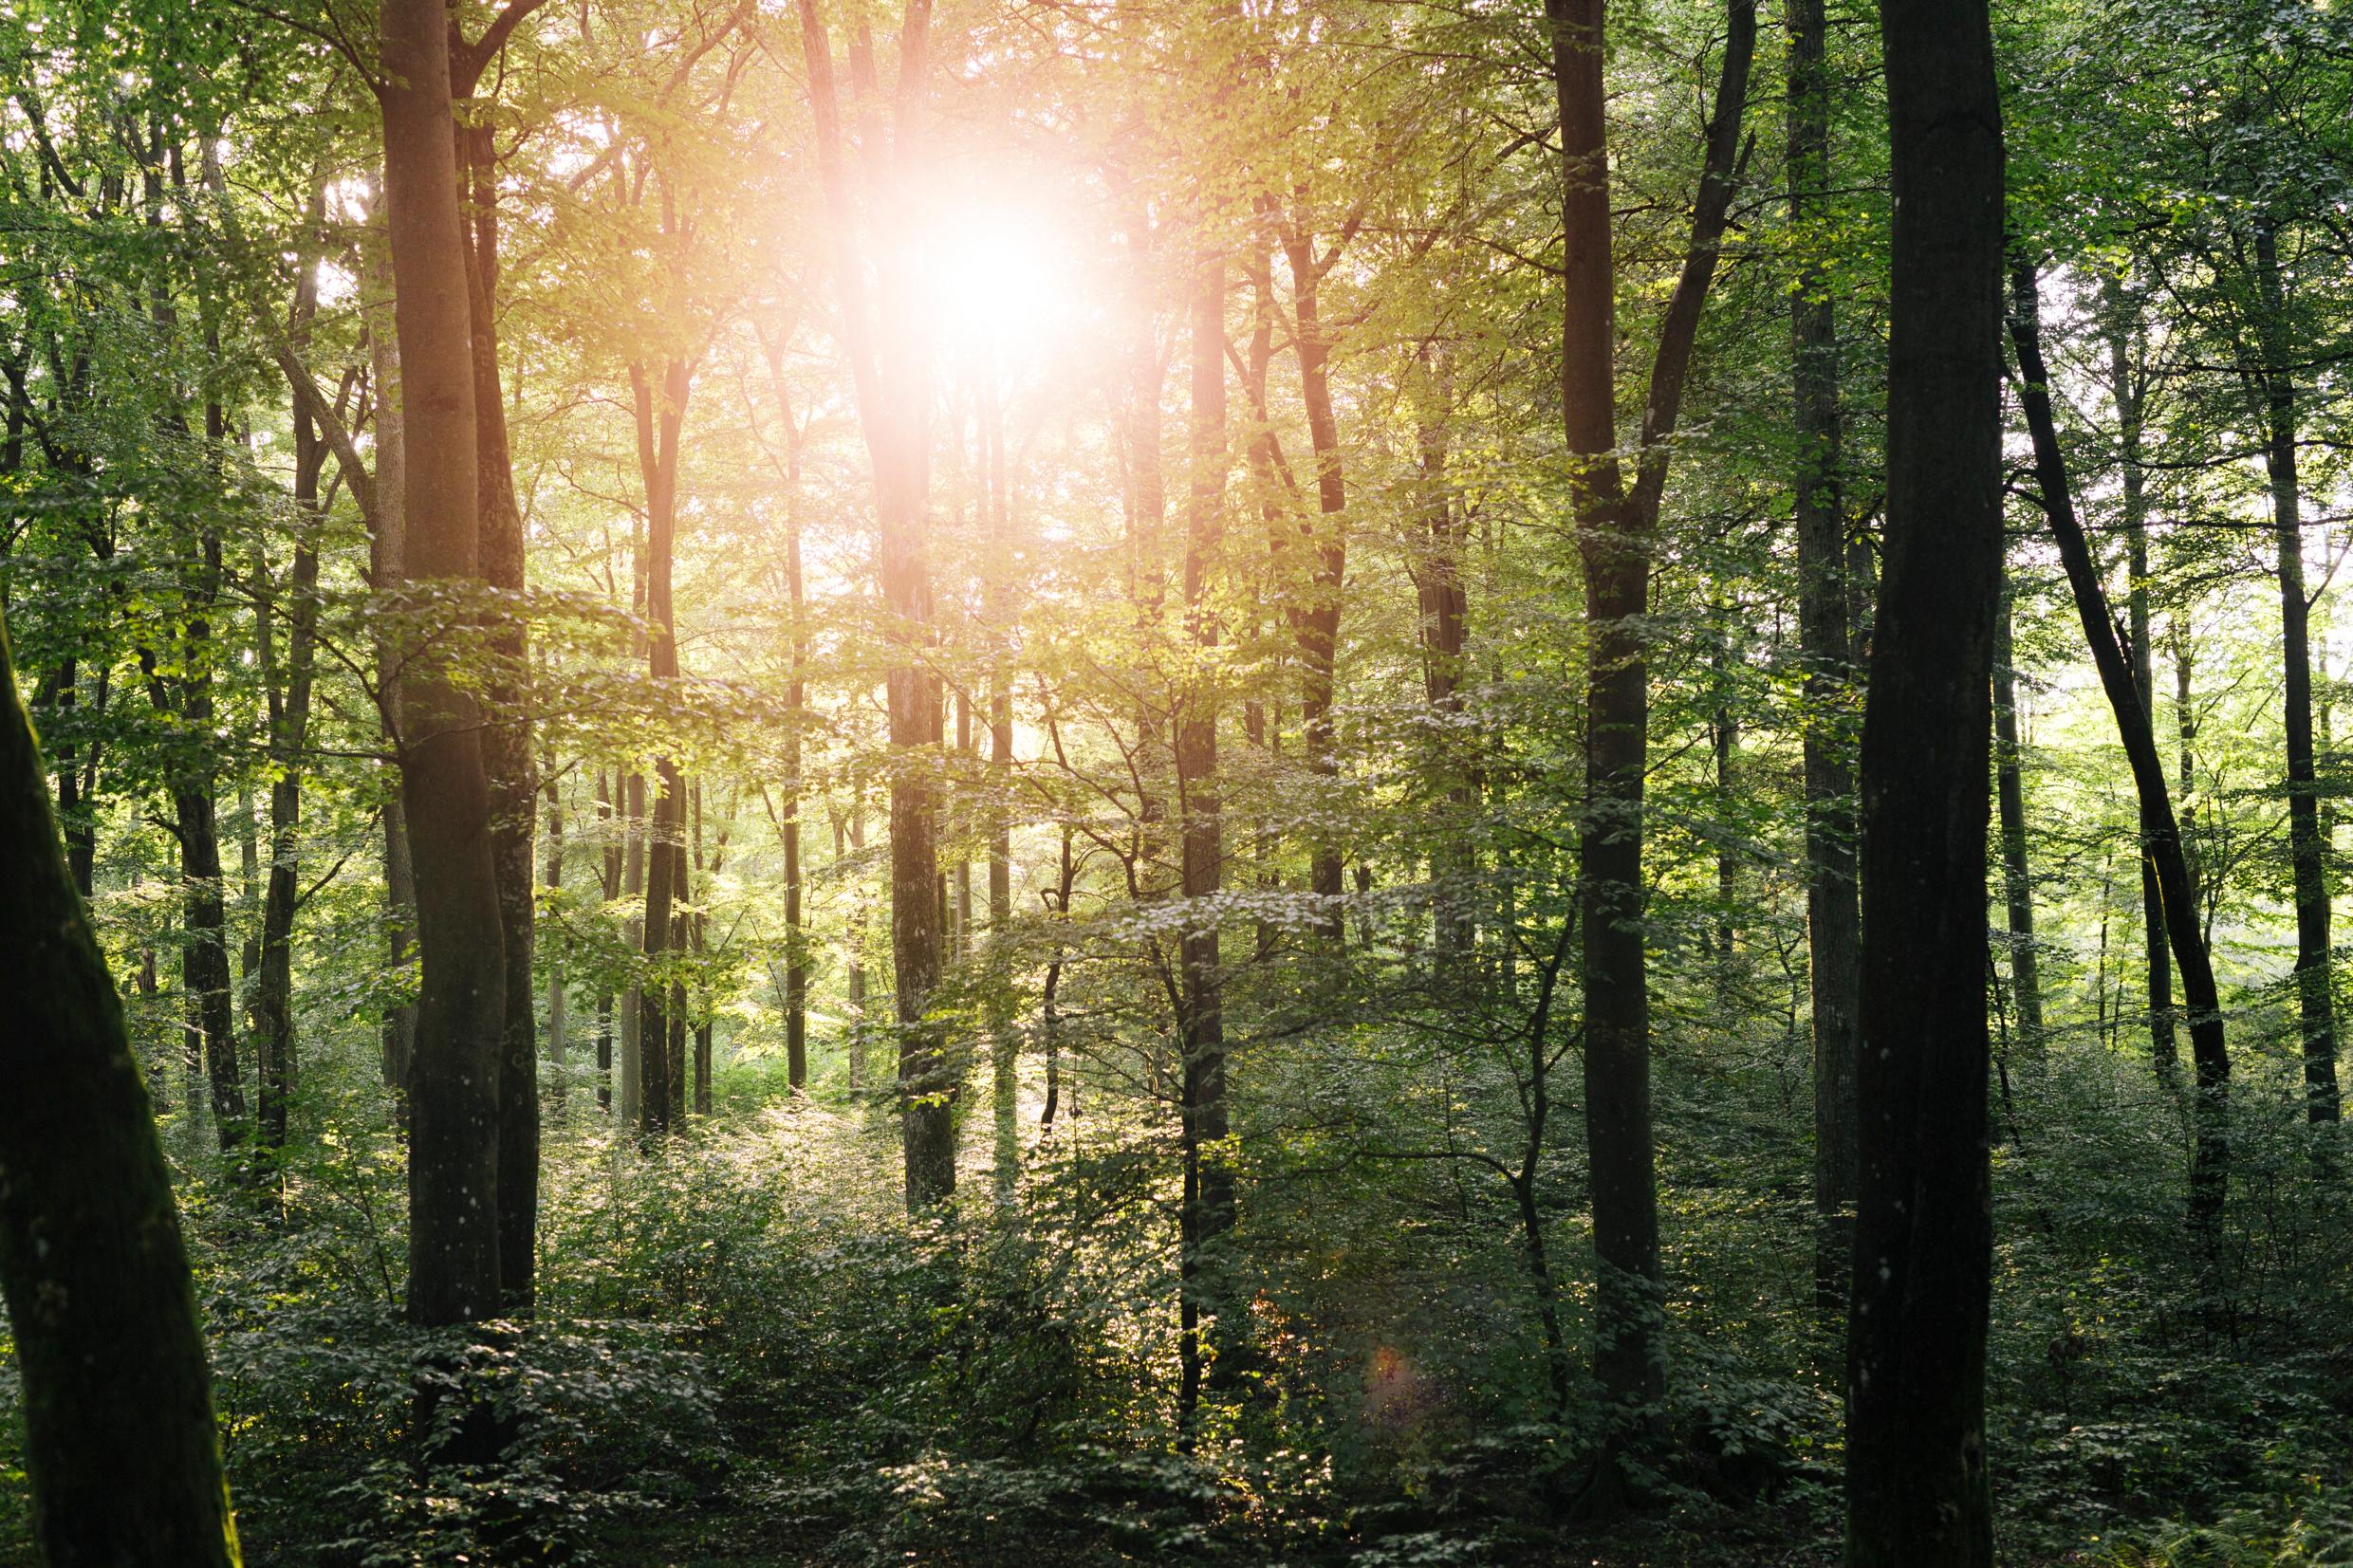 The sun shining through a beech forest.